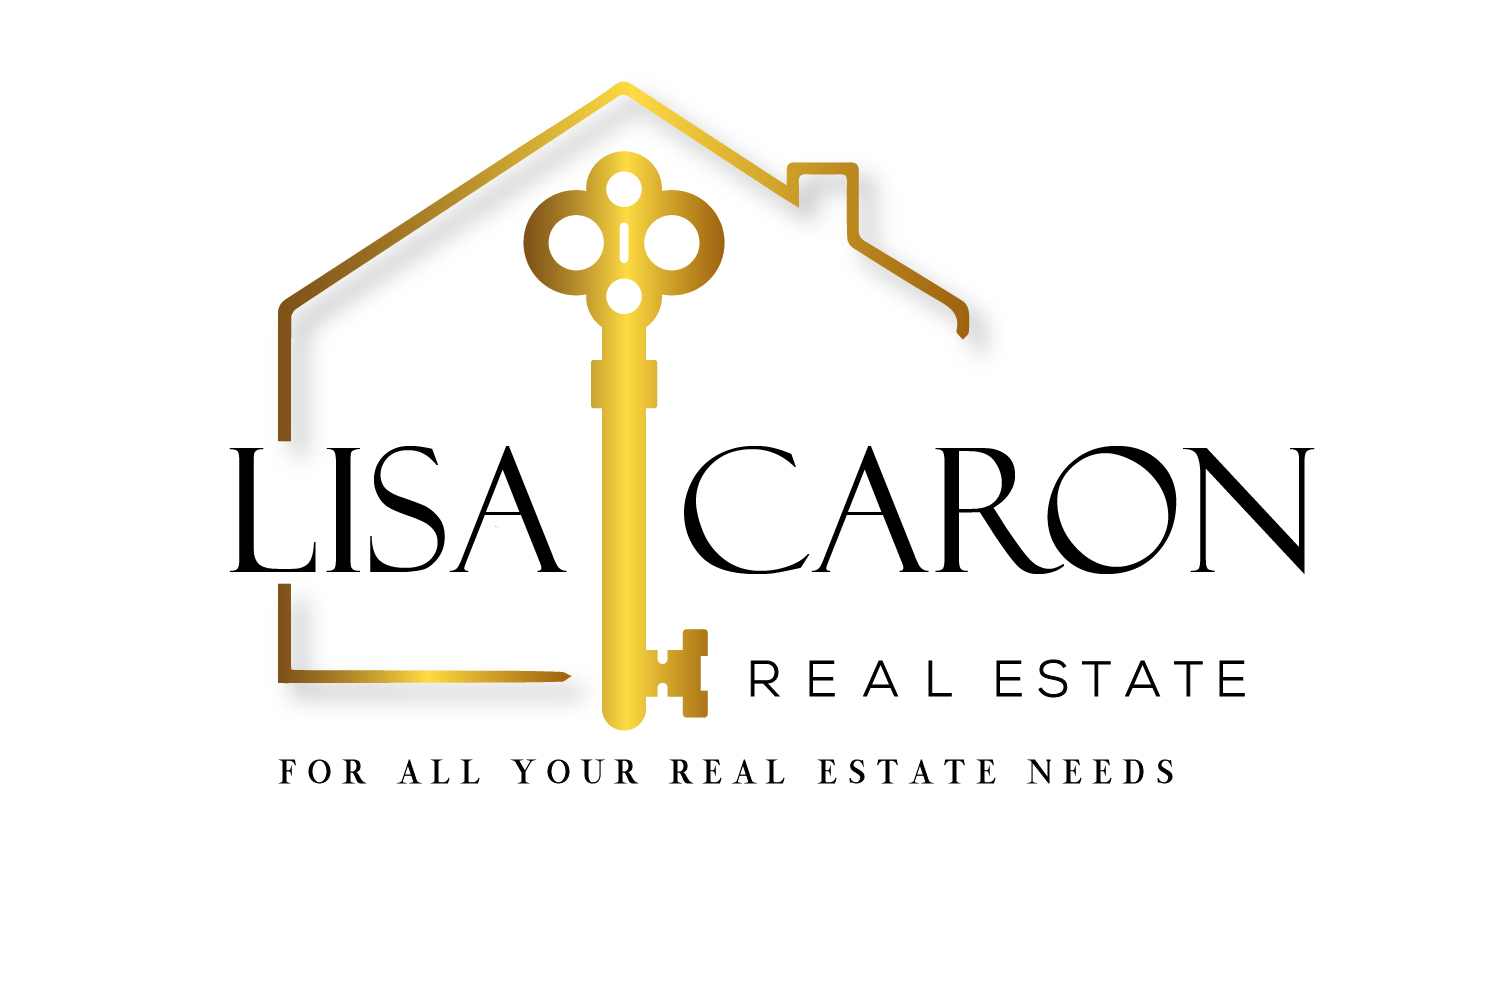 Lisa Caron Real Estate